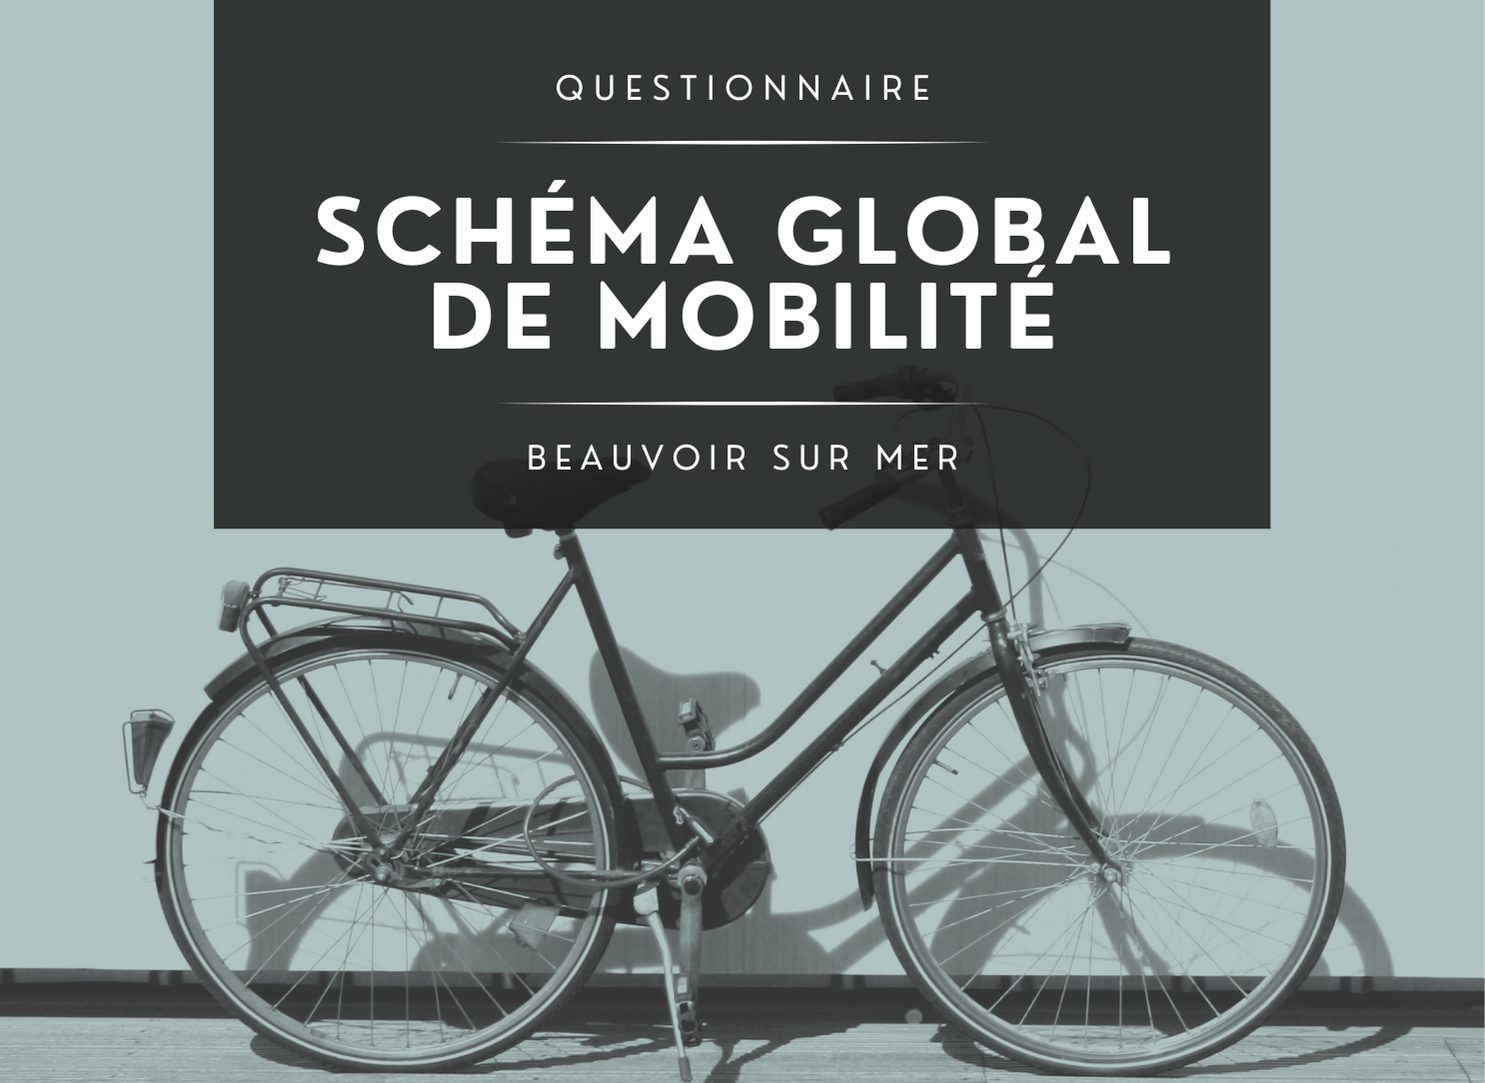 Schéma global de mobilité